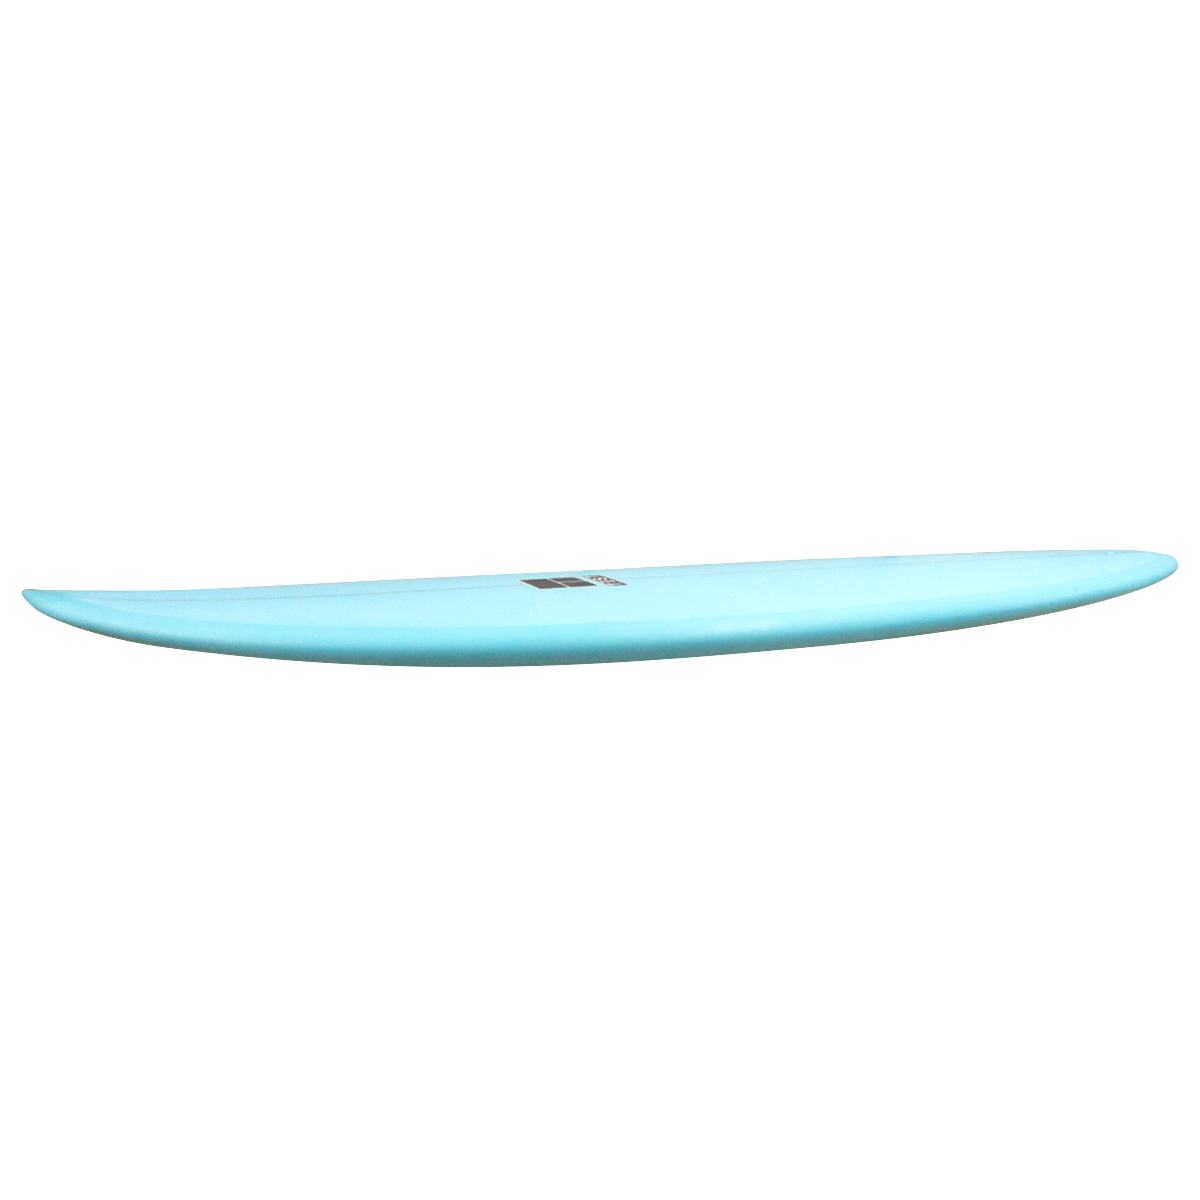 TEST Surfboards / Egg 6`10